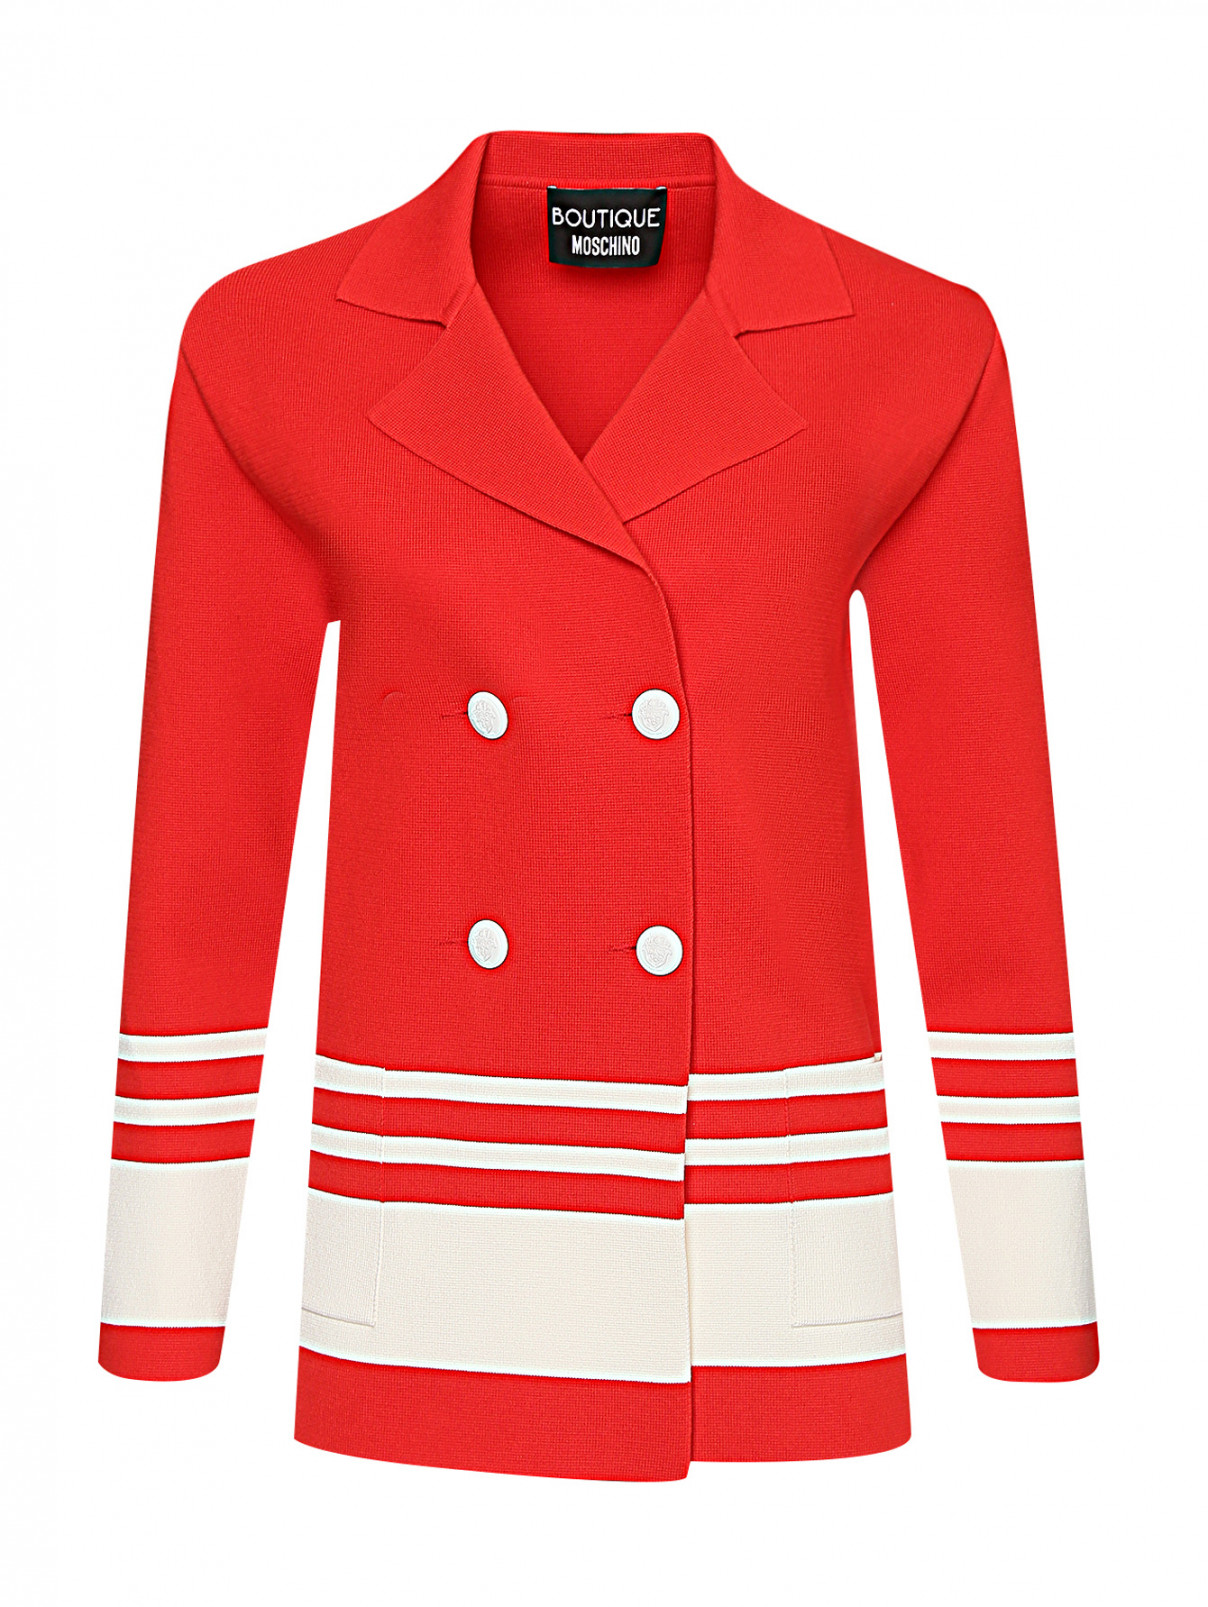 Двубортный жакет из хлопка с узором и карманами Moschino Boutique  –  Общий вид  – Цвет:  Красный